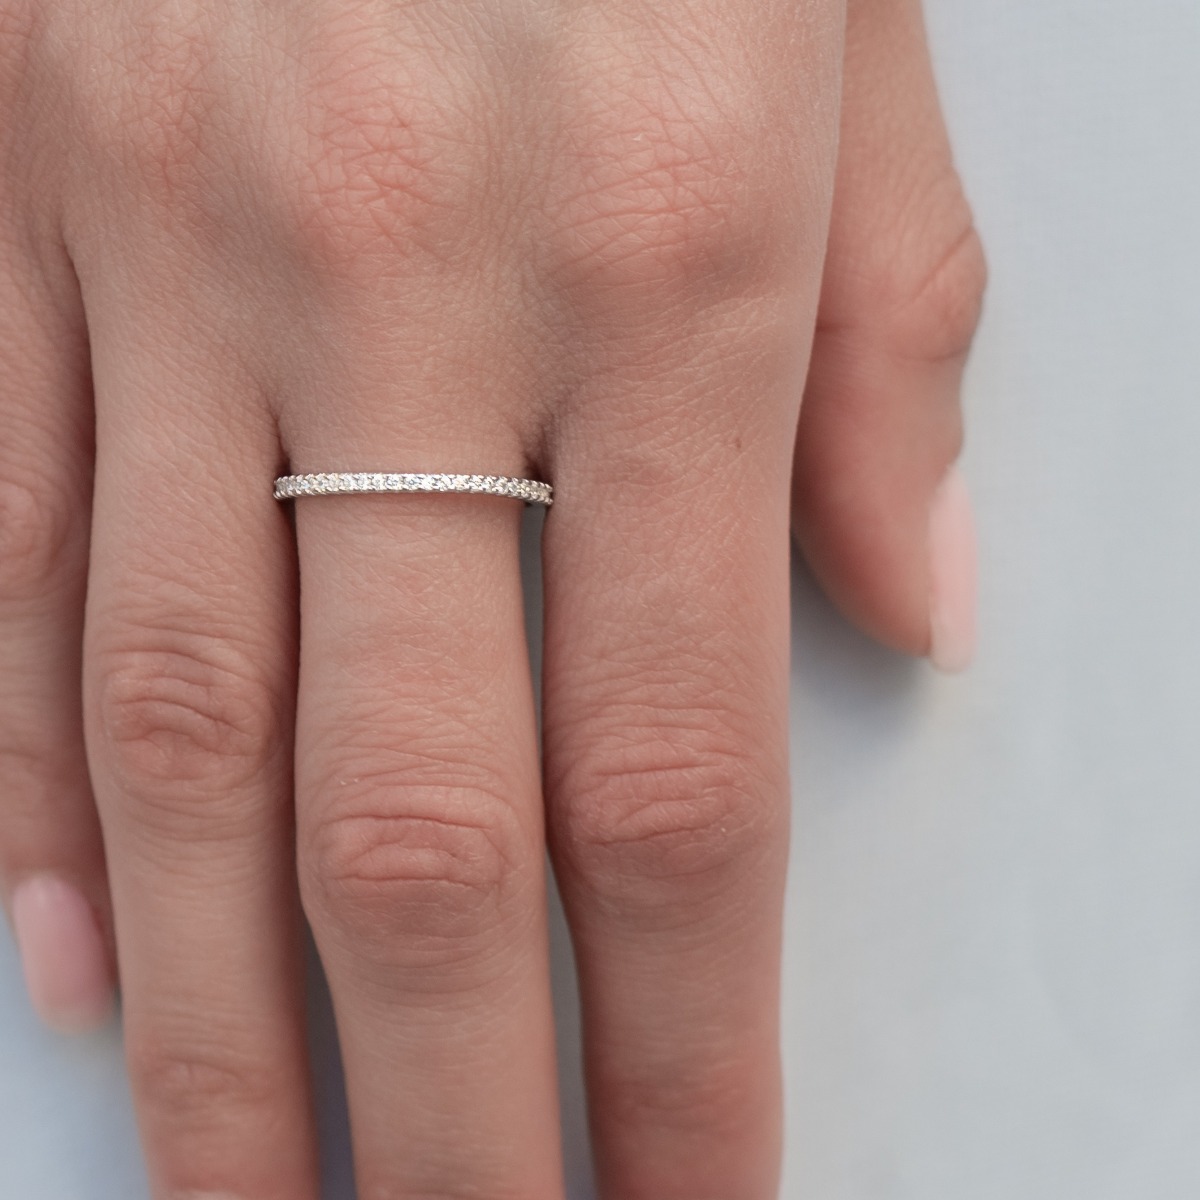 Сребърен пръстен - Халка с Циркони